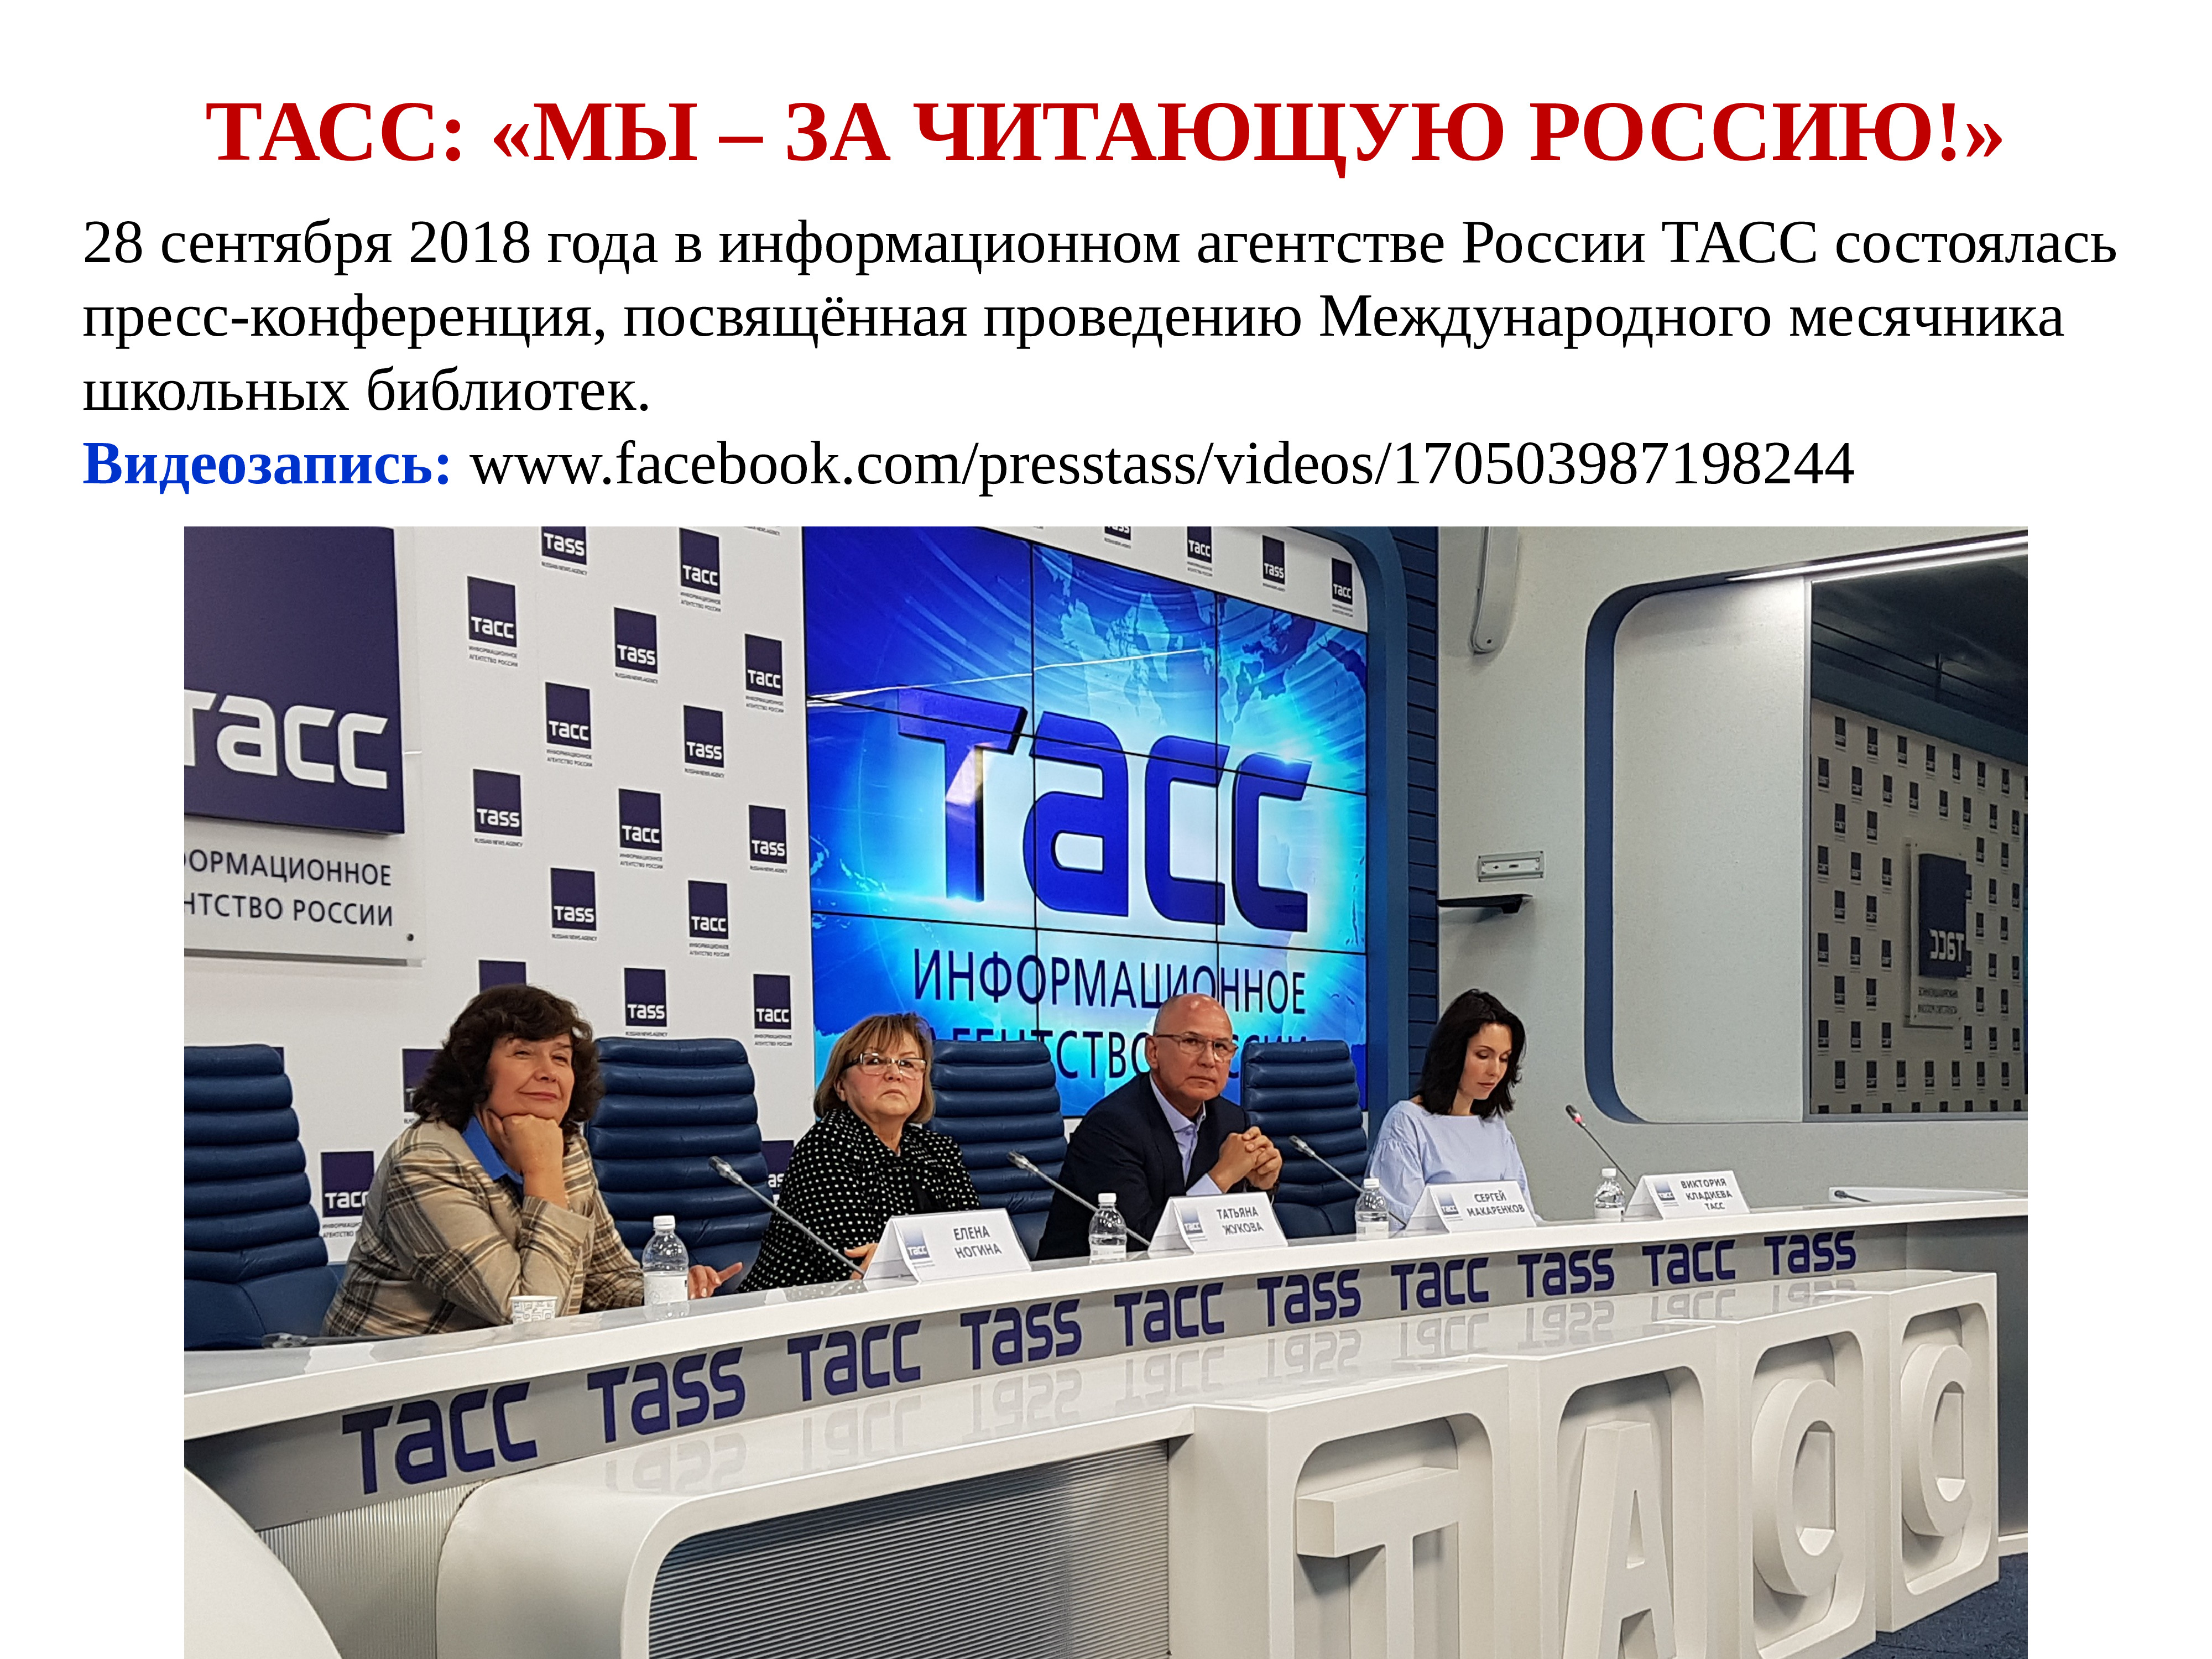 ТАСС информационное агентство России. 28 Сентября 2018.